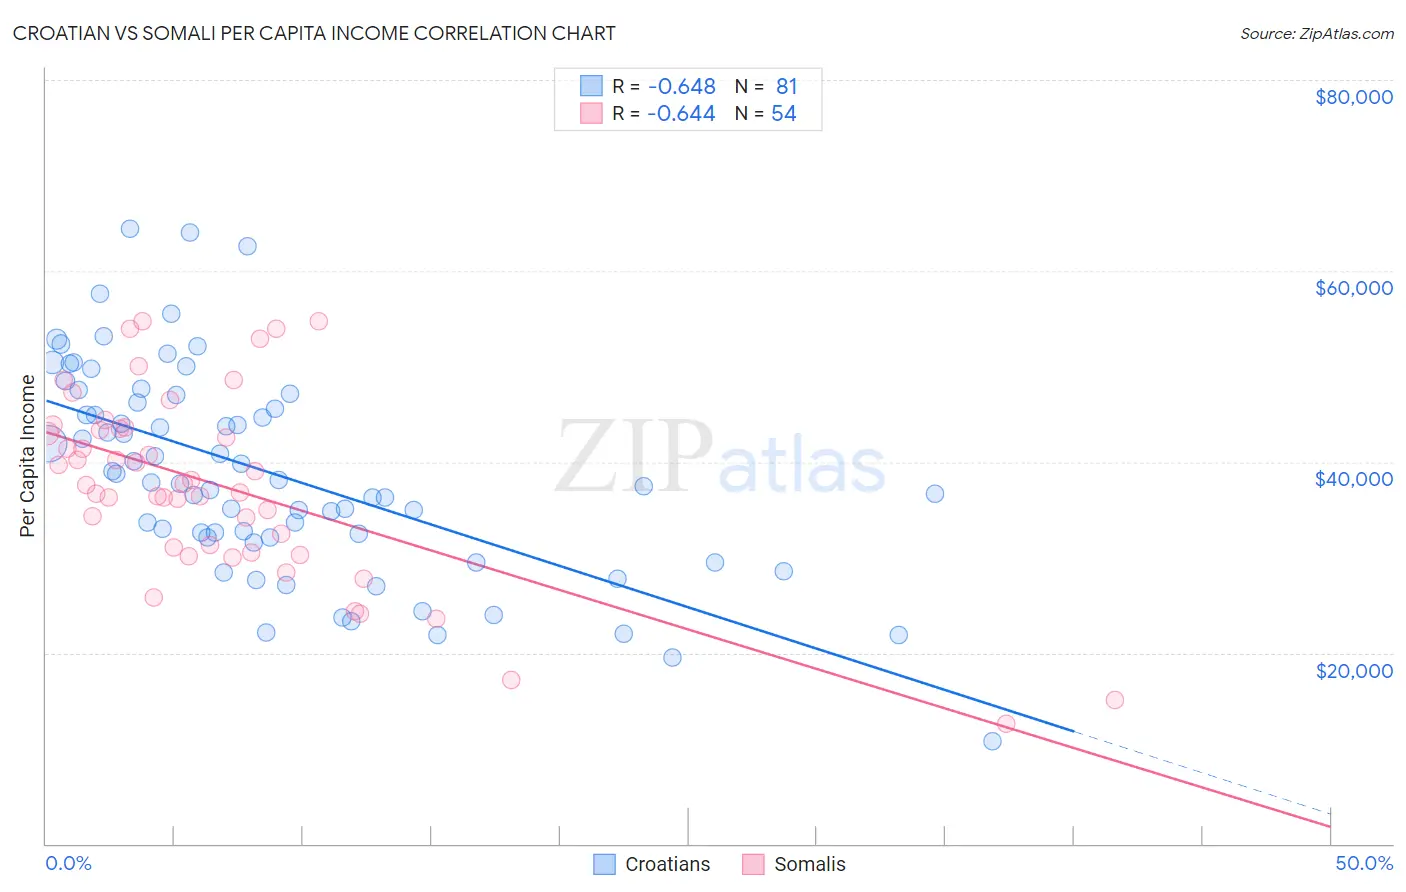 Croatian vs Somali Per Capita Income